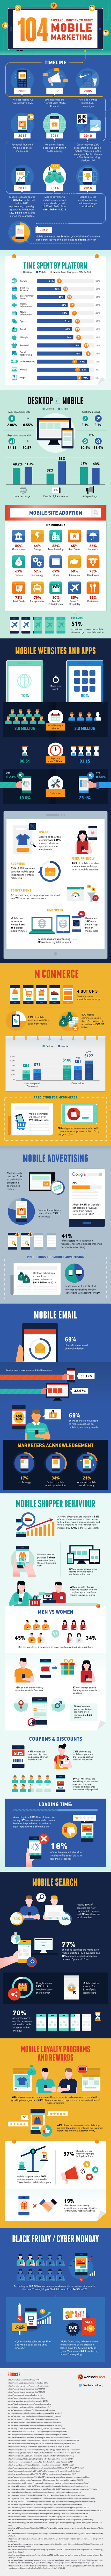 infografía de marketing móvil